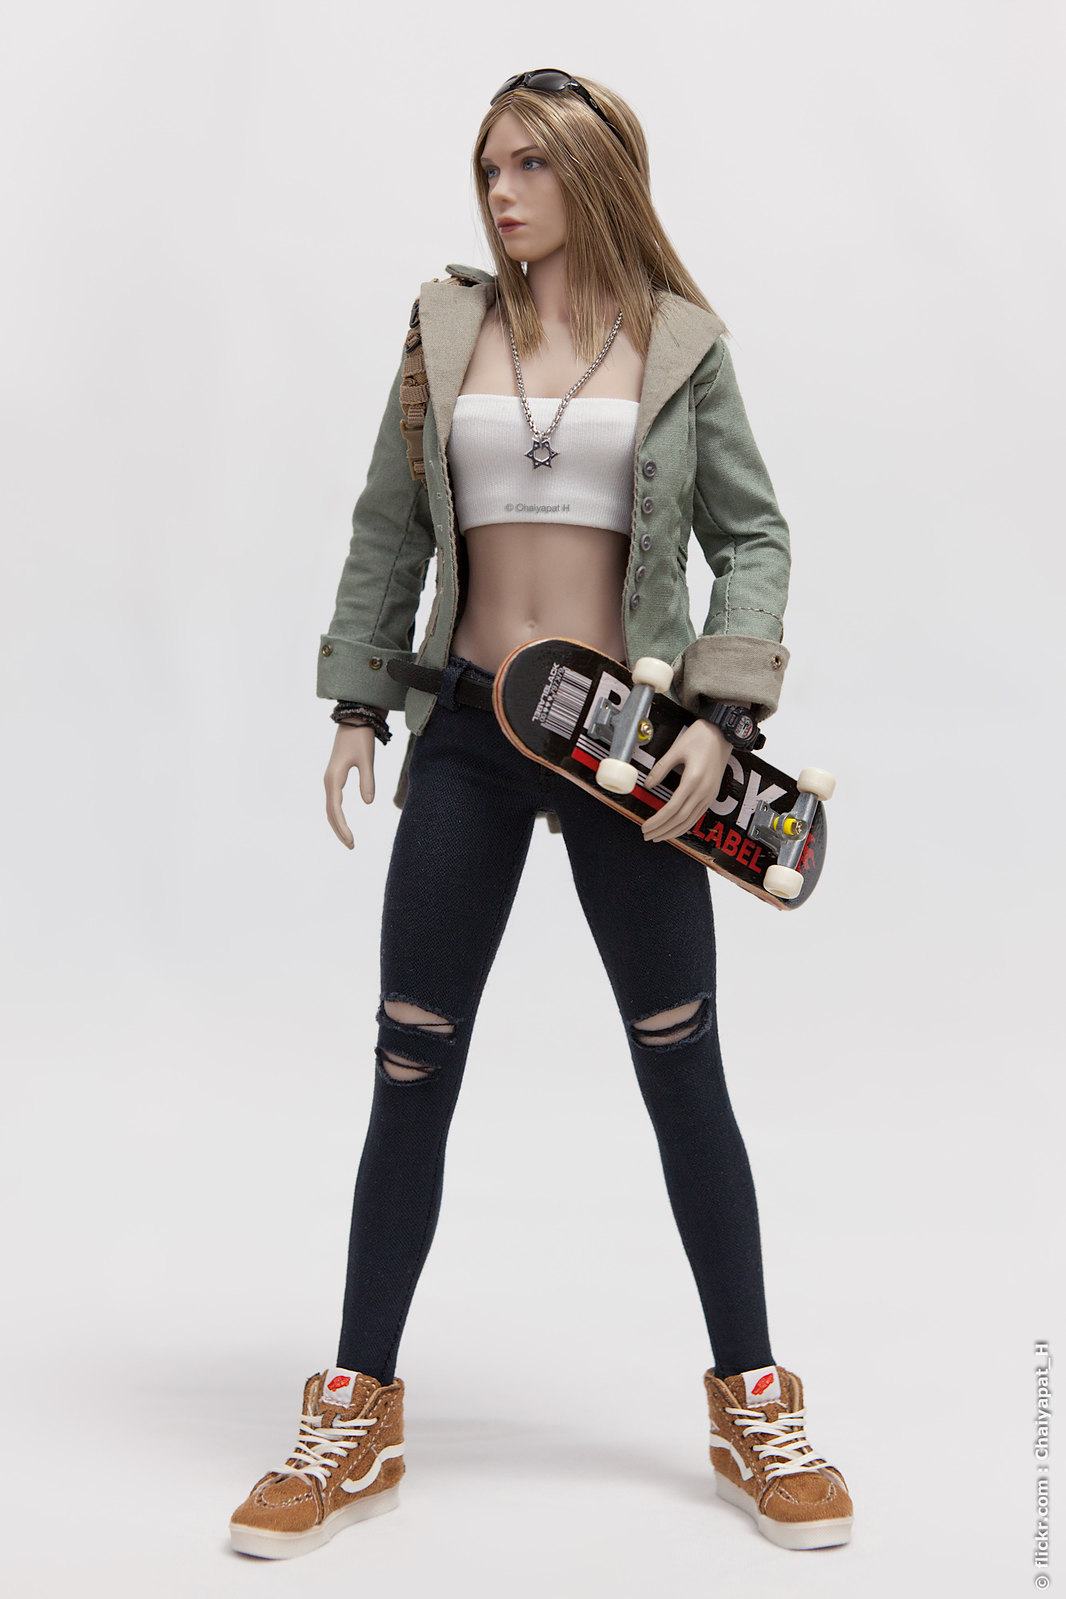 custom - Skater Girl 41775305602_a9c84c7459_h